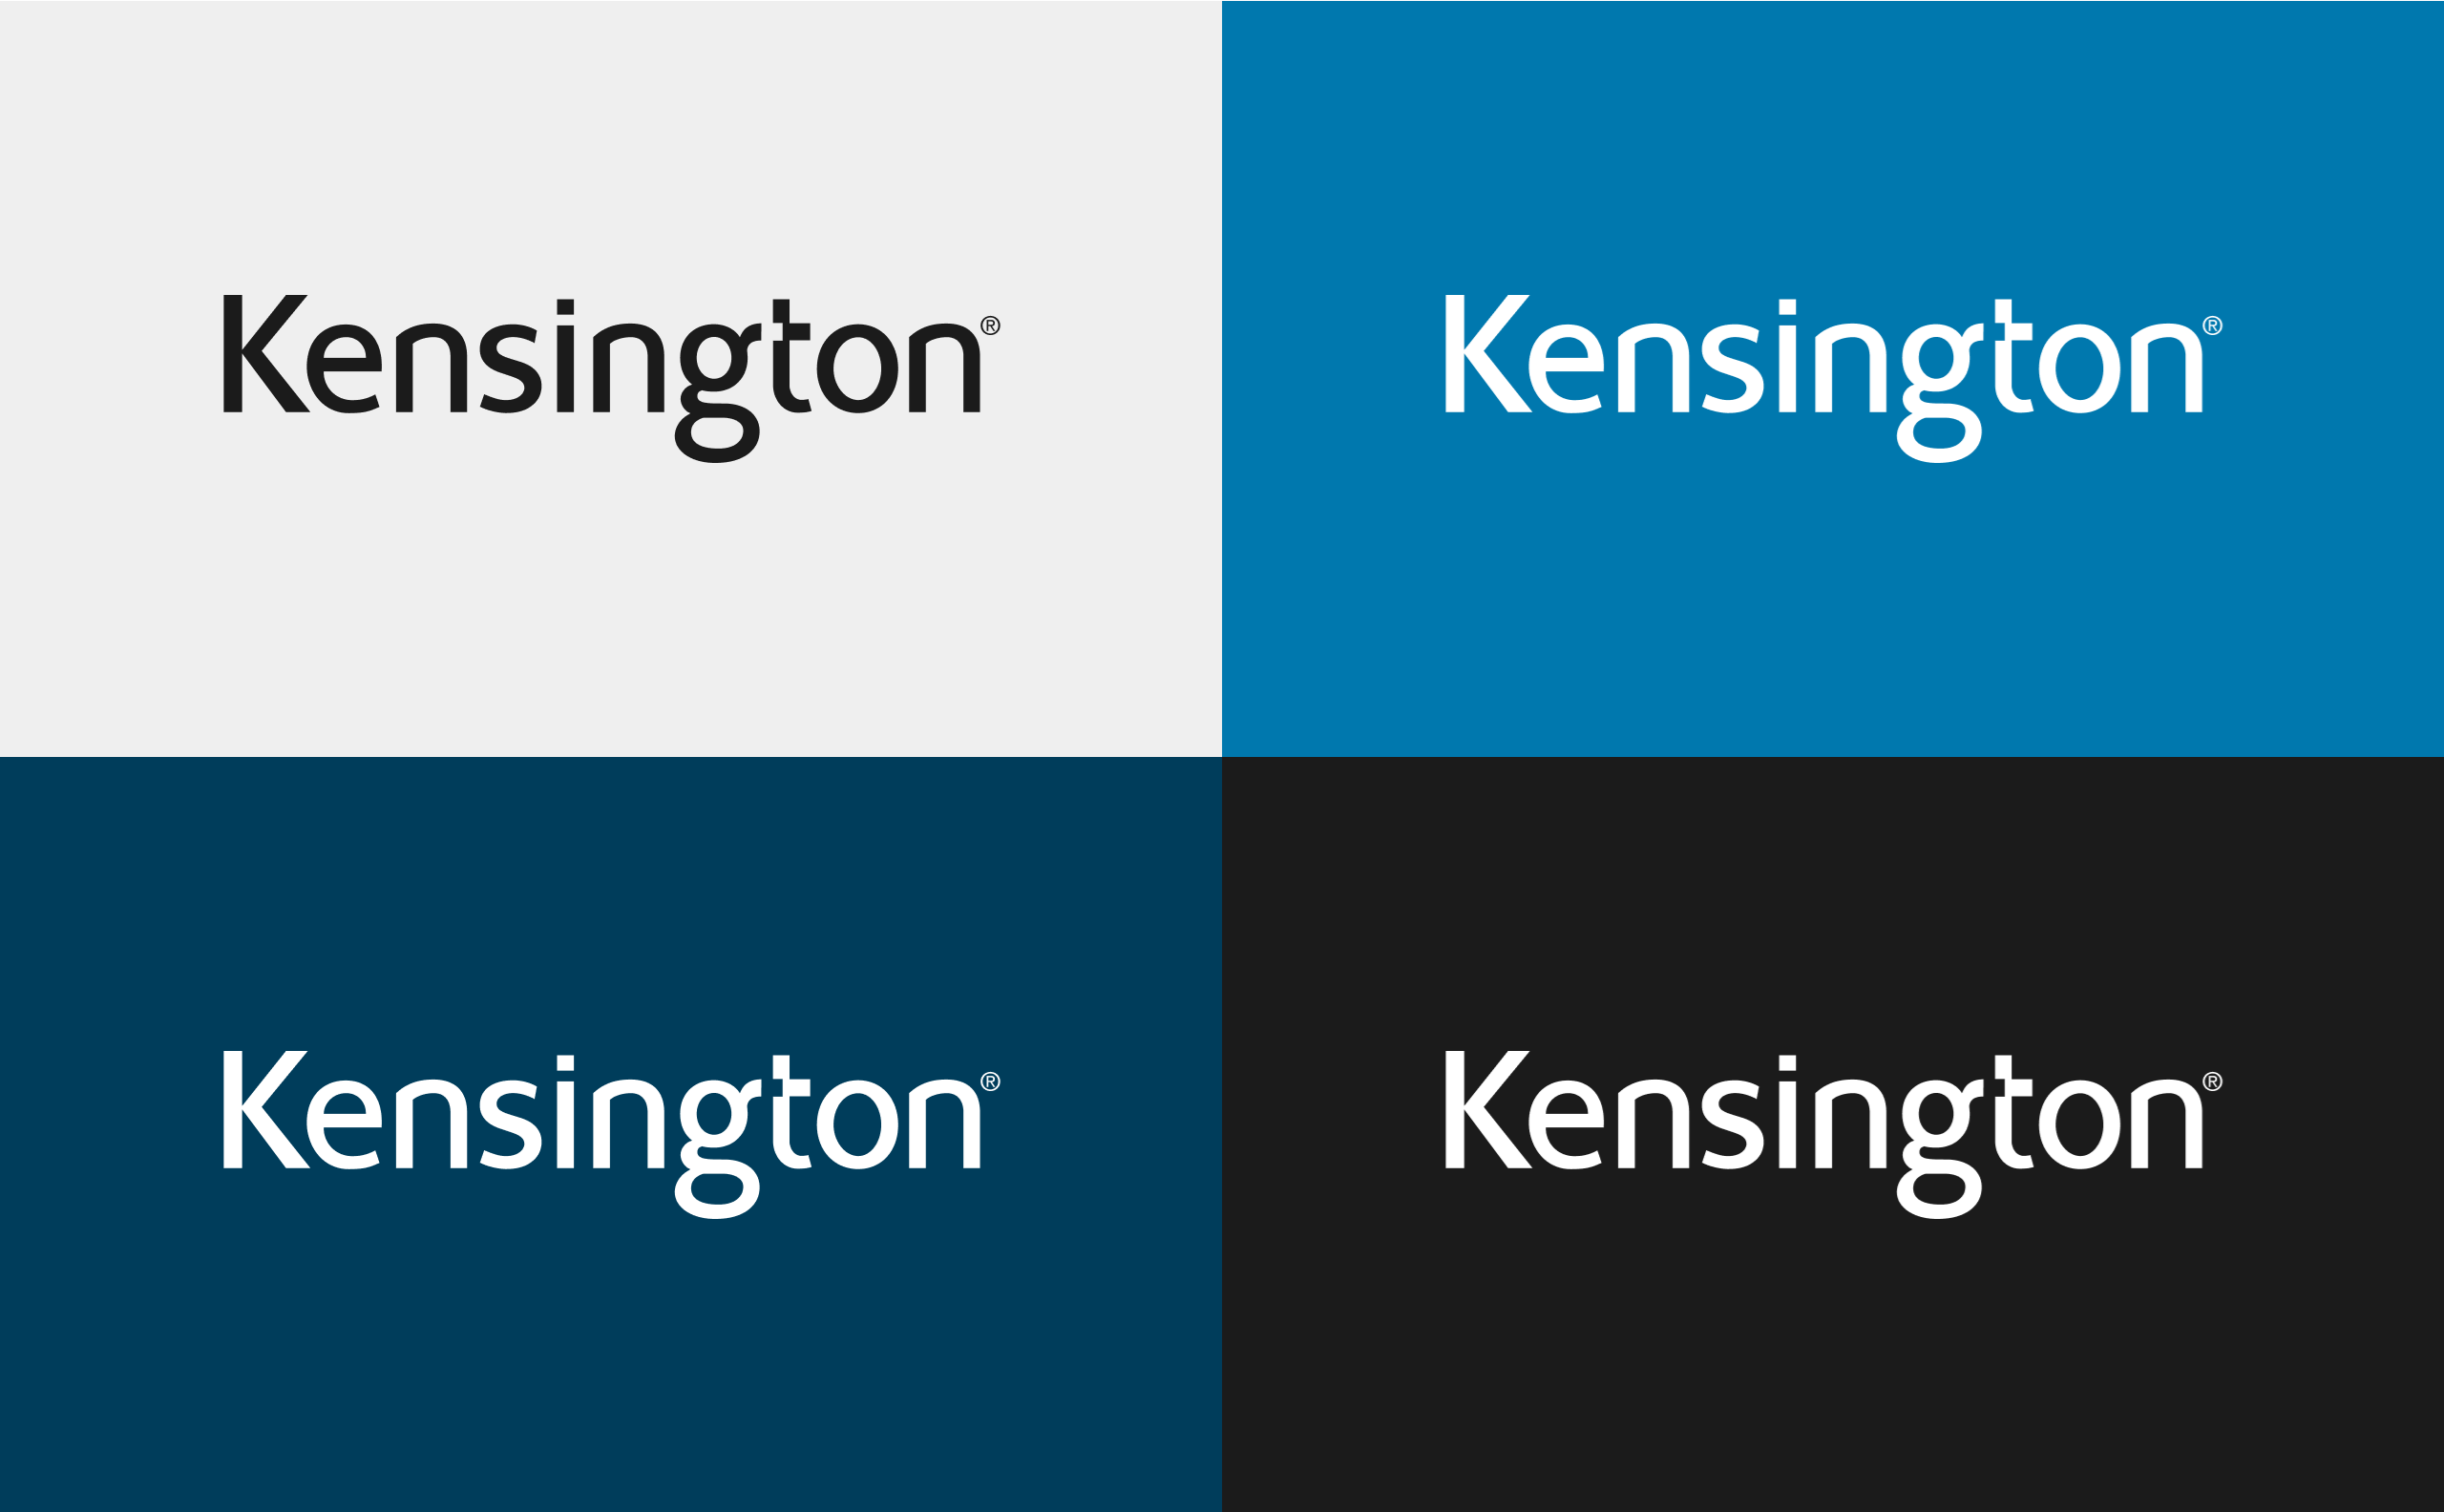 Kensington logo on different colors